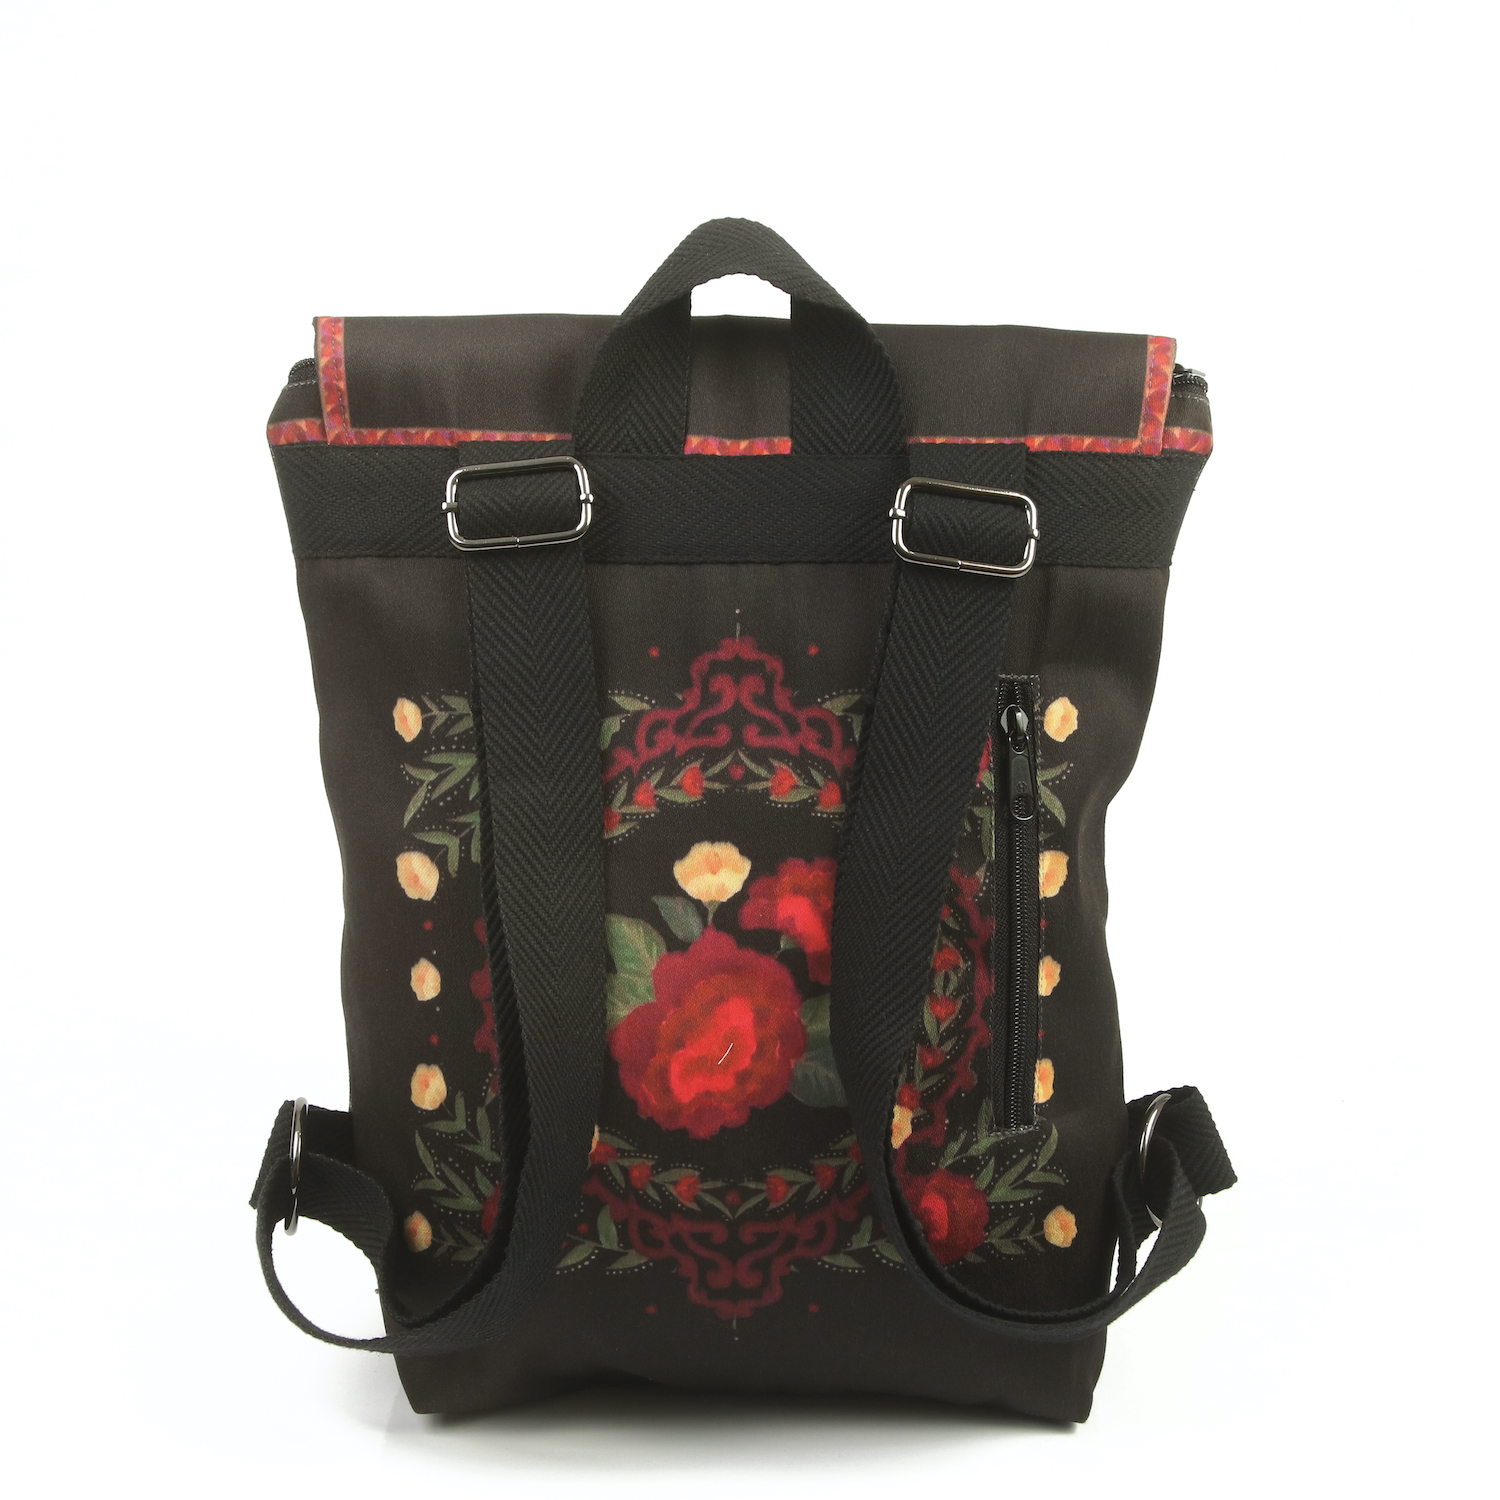 LazyDayz-Designs-Backpack-γυναικείος-σάκος-πλάτης-χειροποίητος bb0703c